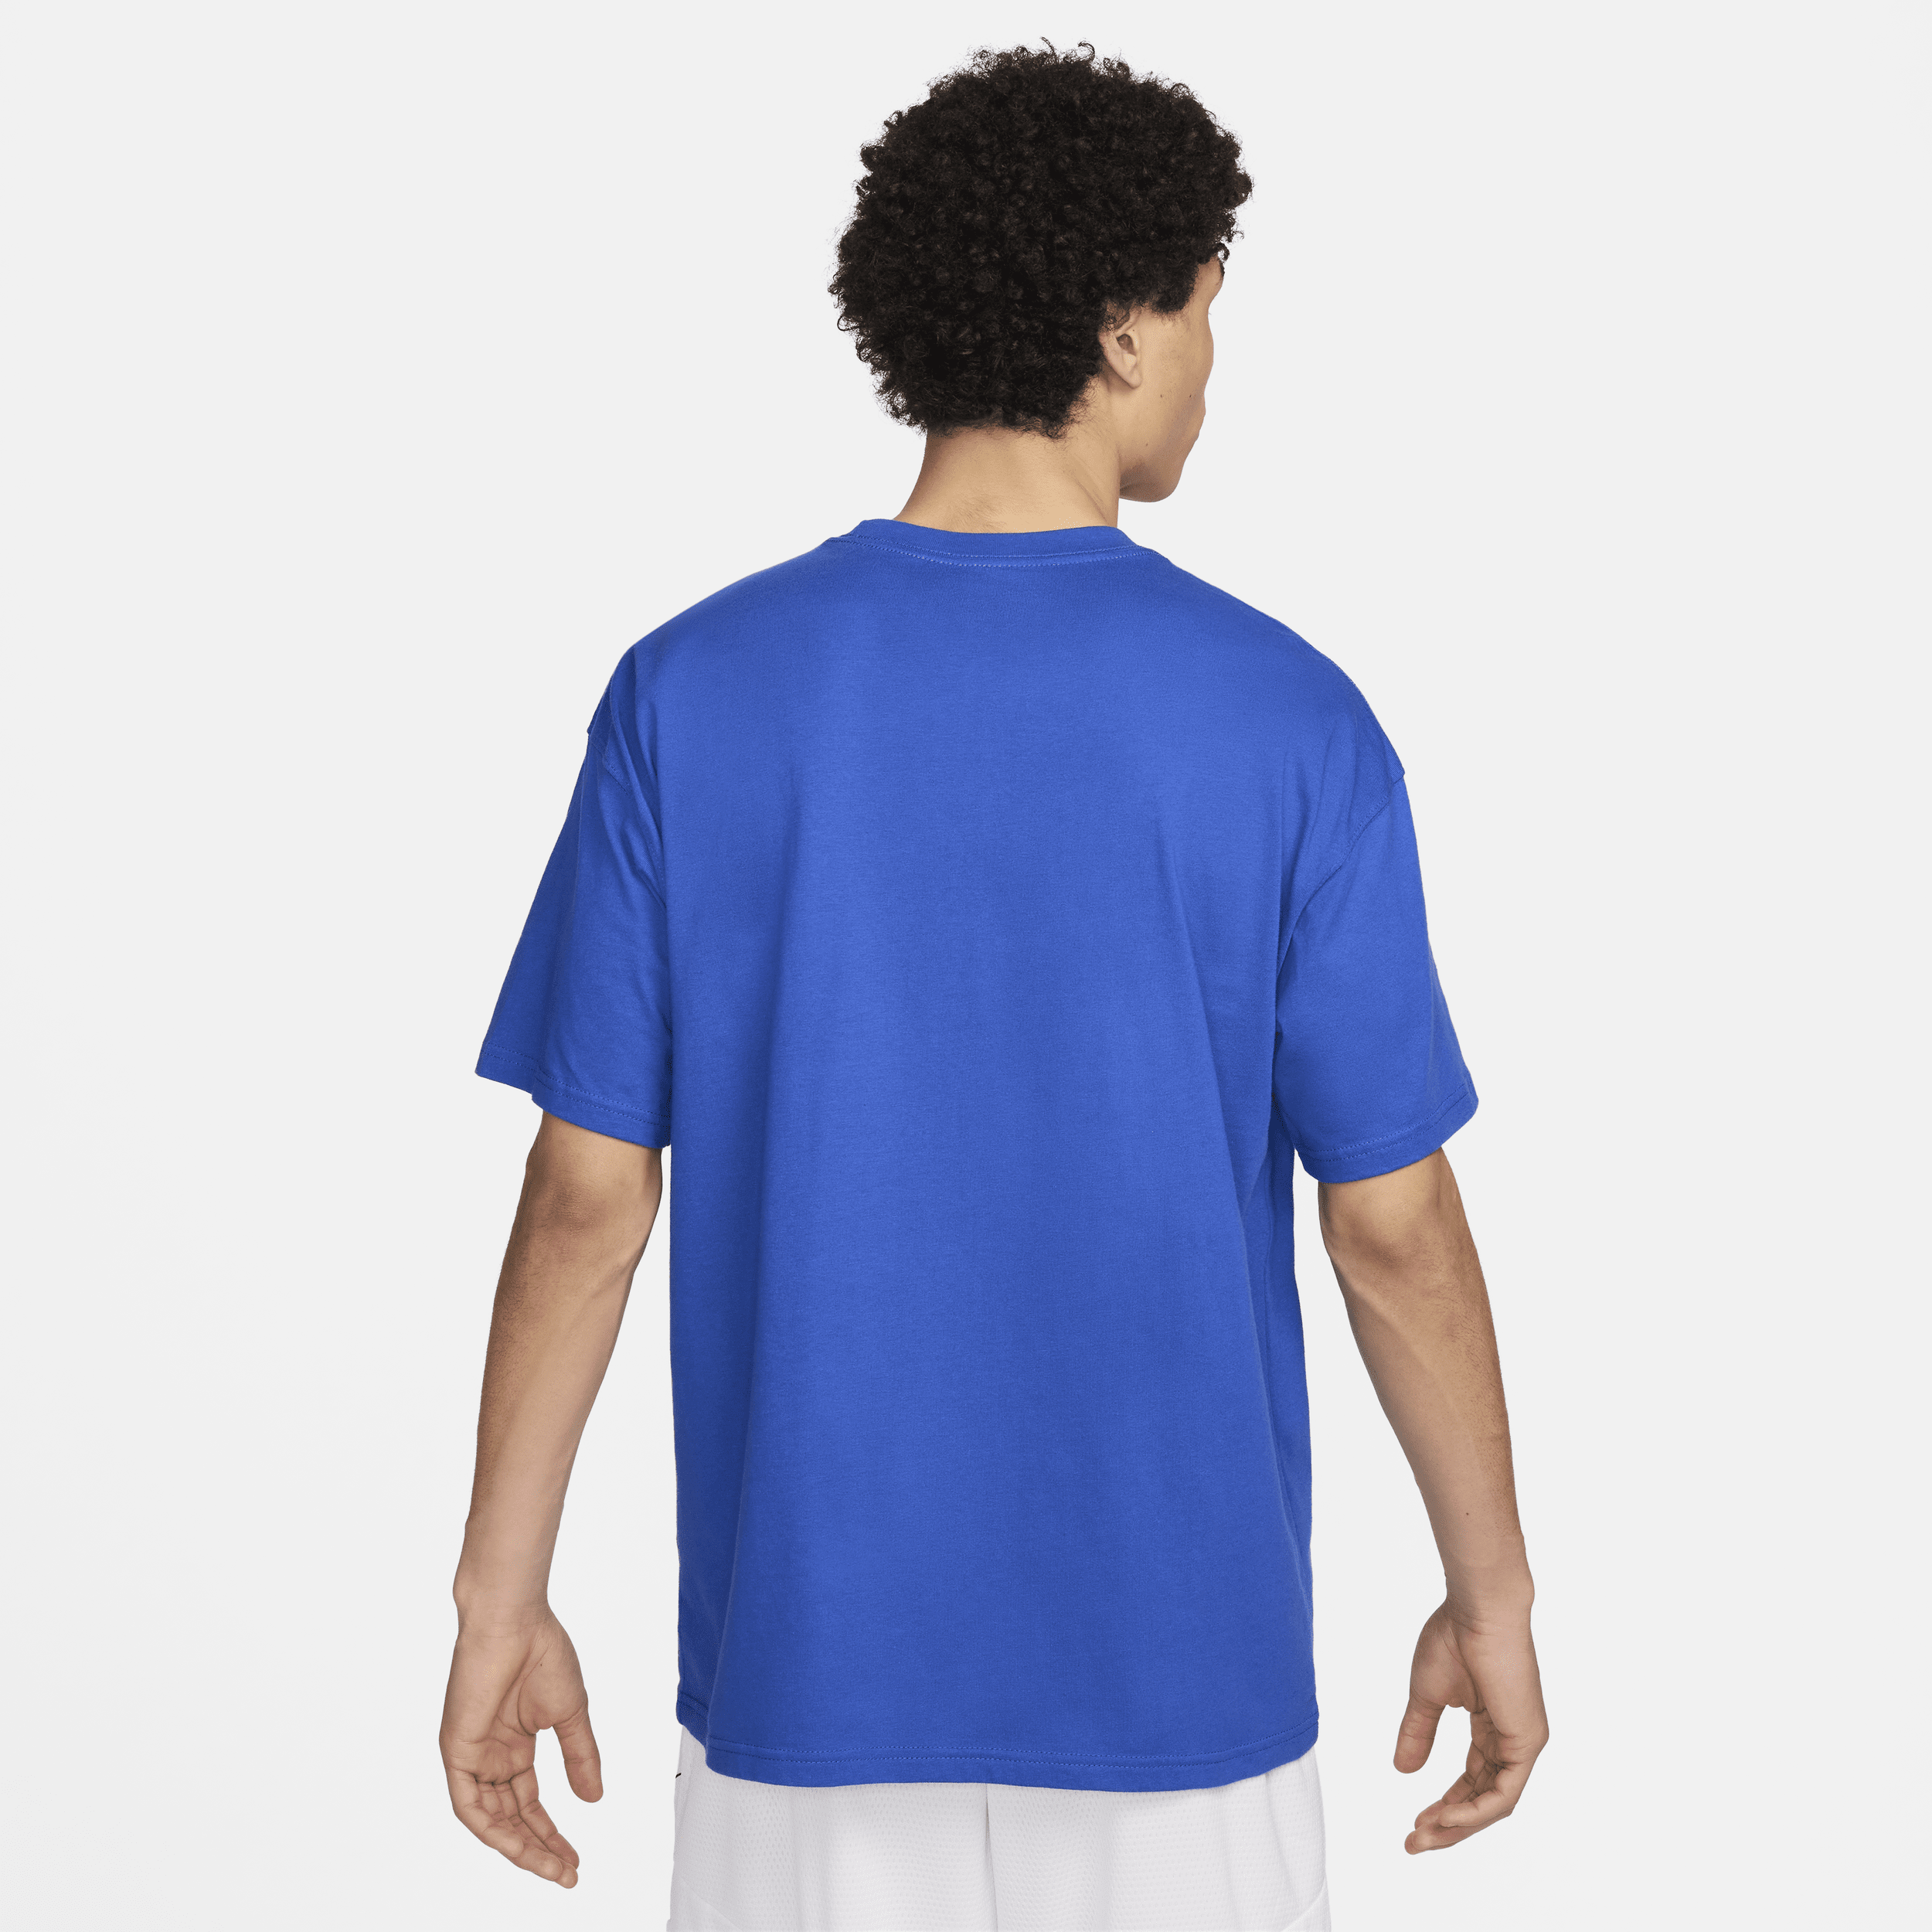 Nike Max90 basketbalshirt voor heren Blauw